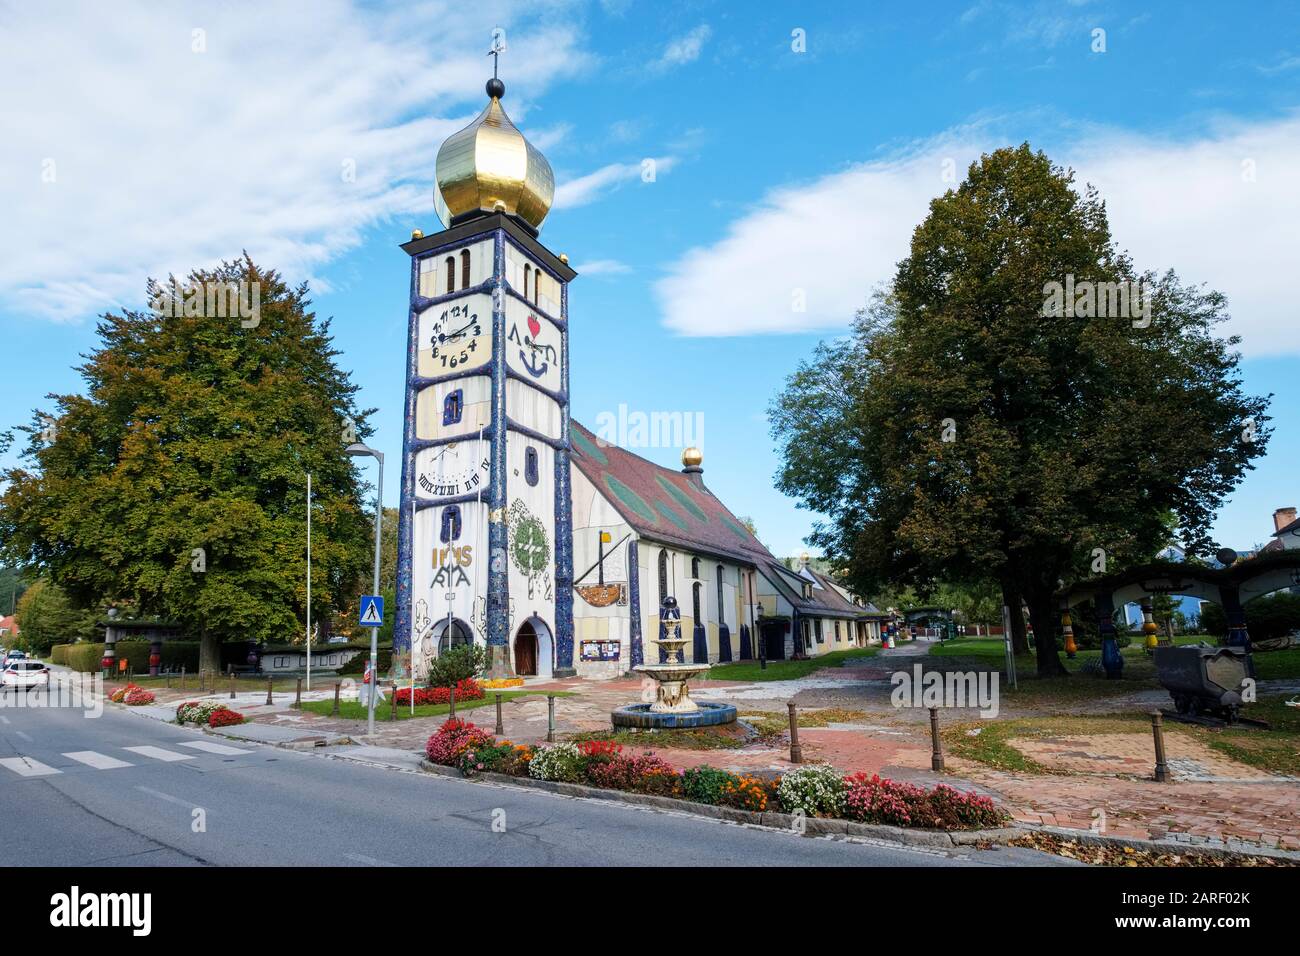 Chiesa Di Santa Barbara, (Santa Barbara-Kirche) Bärnbach, Austria. Riprogettato dall'architetto Friedensreich Hundertwasser. Foto Stock